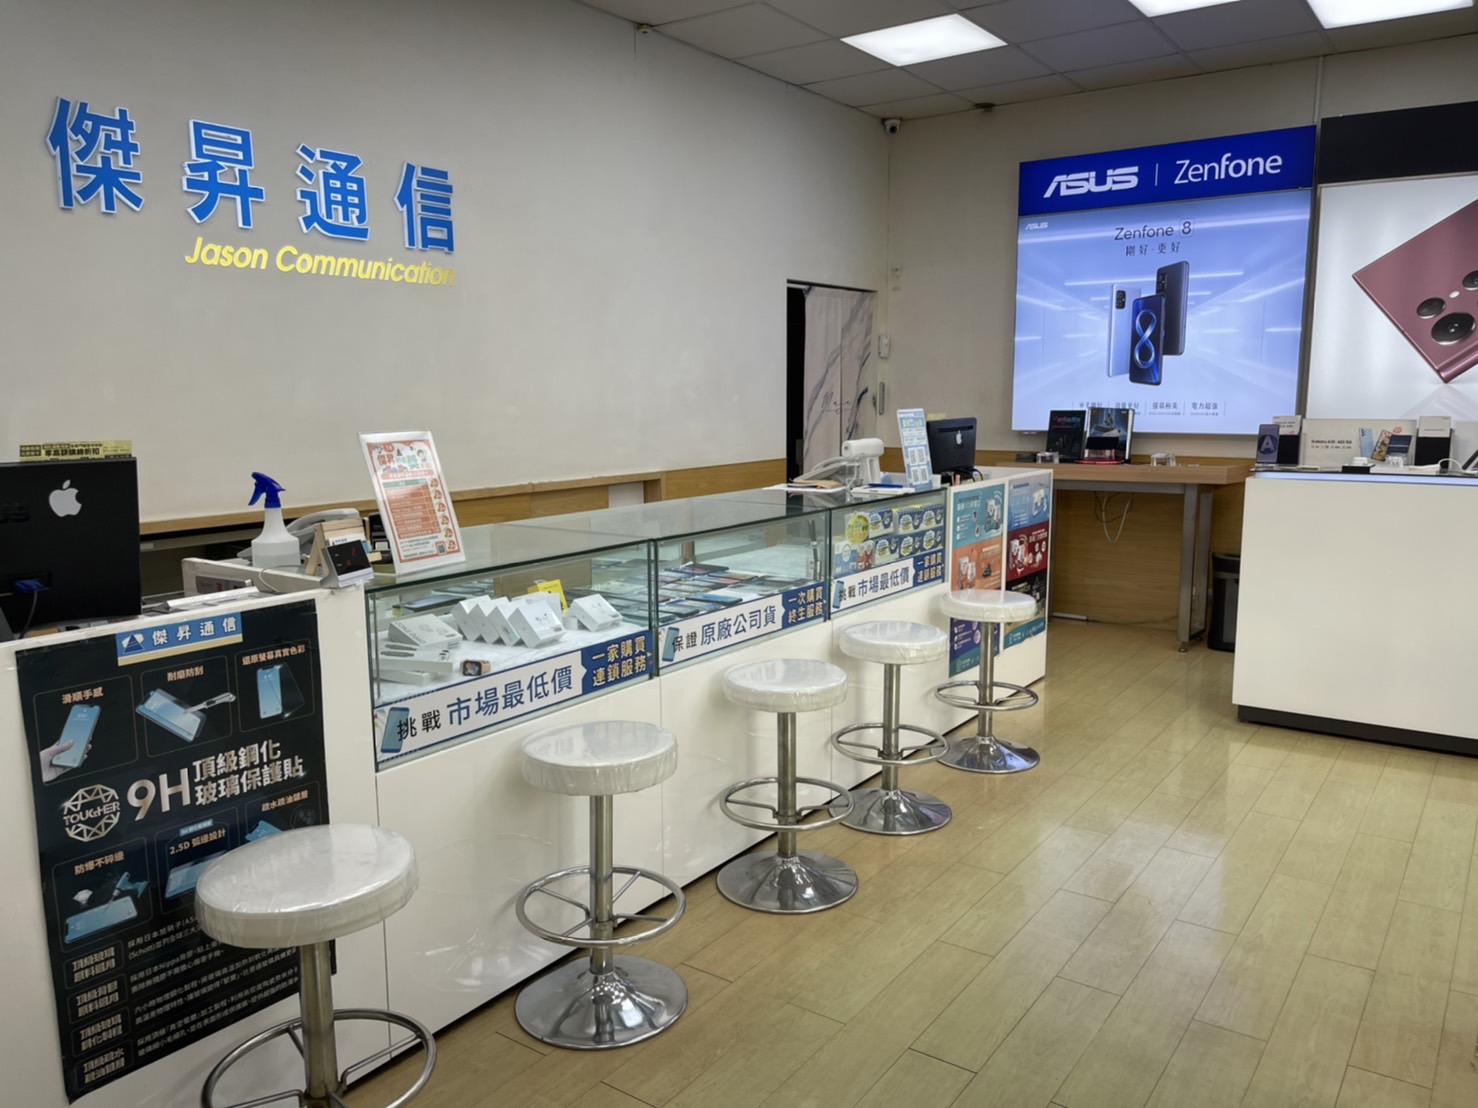 傑昇通信是在1986年成立，目前已經營超過35年以上，並且在台灣擁有超過100間直營門市